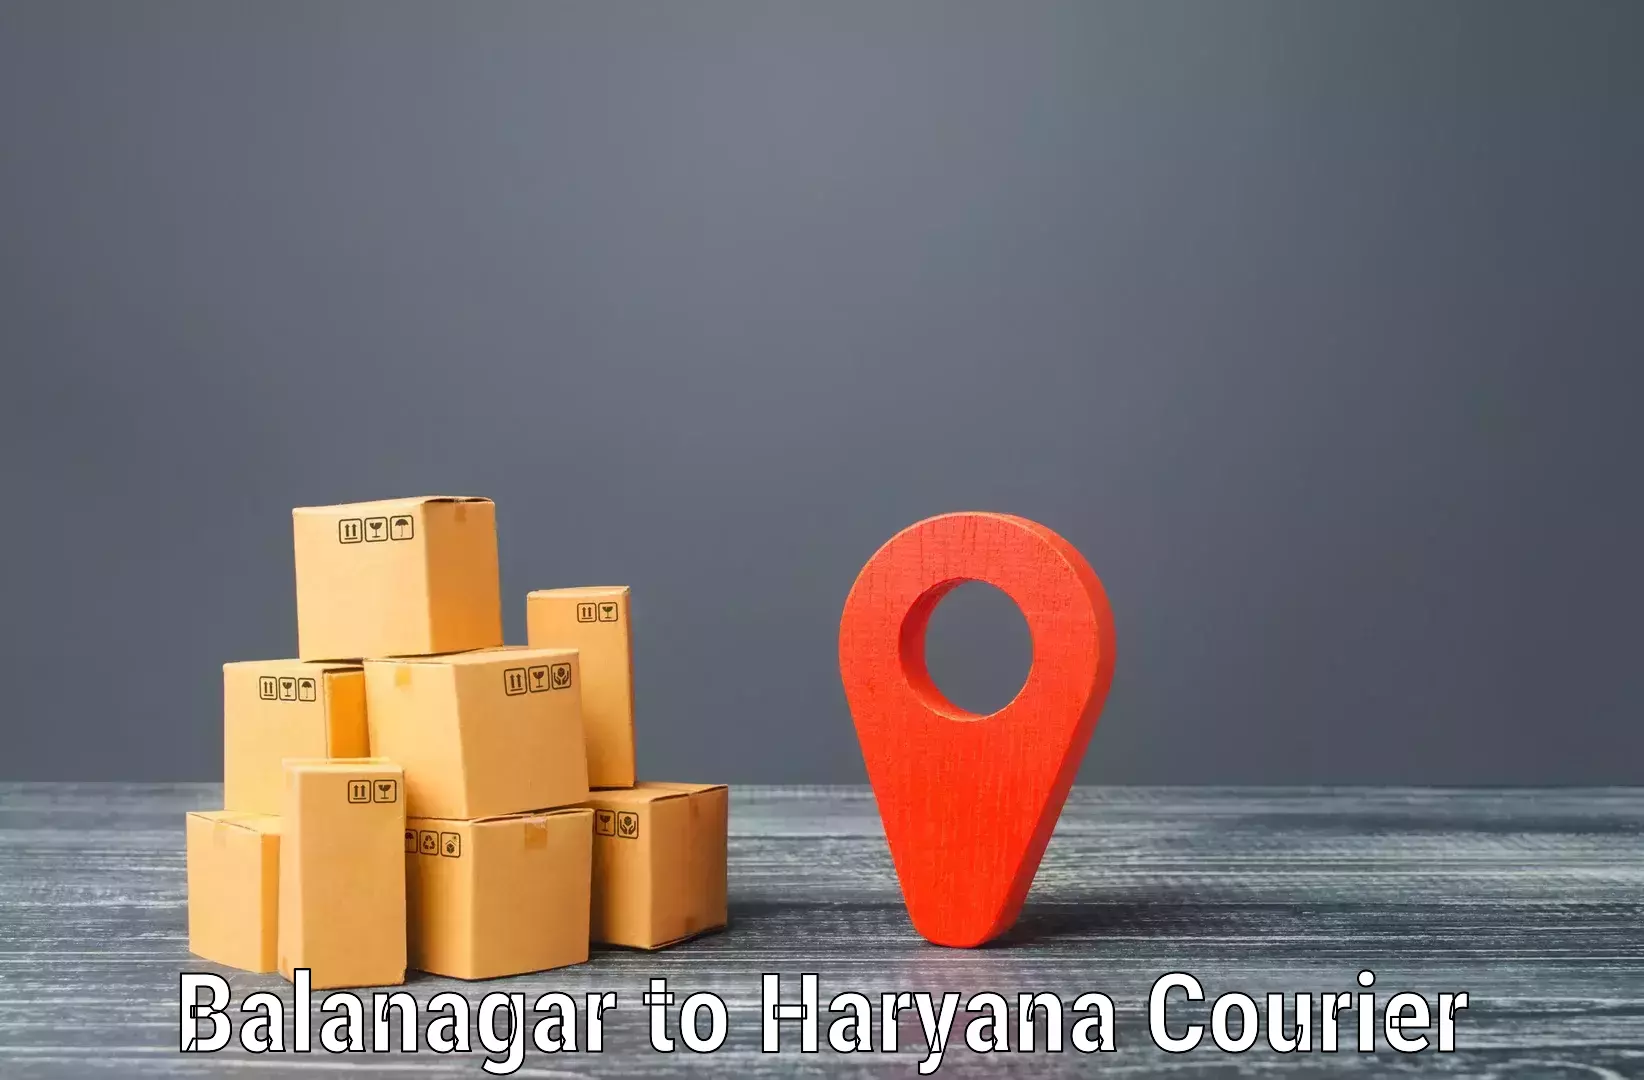 Customer-centric shipping in Balanagar to Chaudhary Charan Singh Haryana Agricultural University Hisar